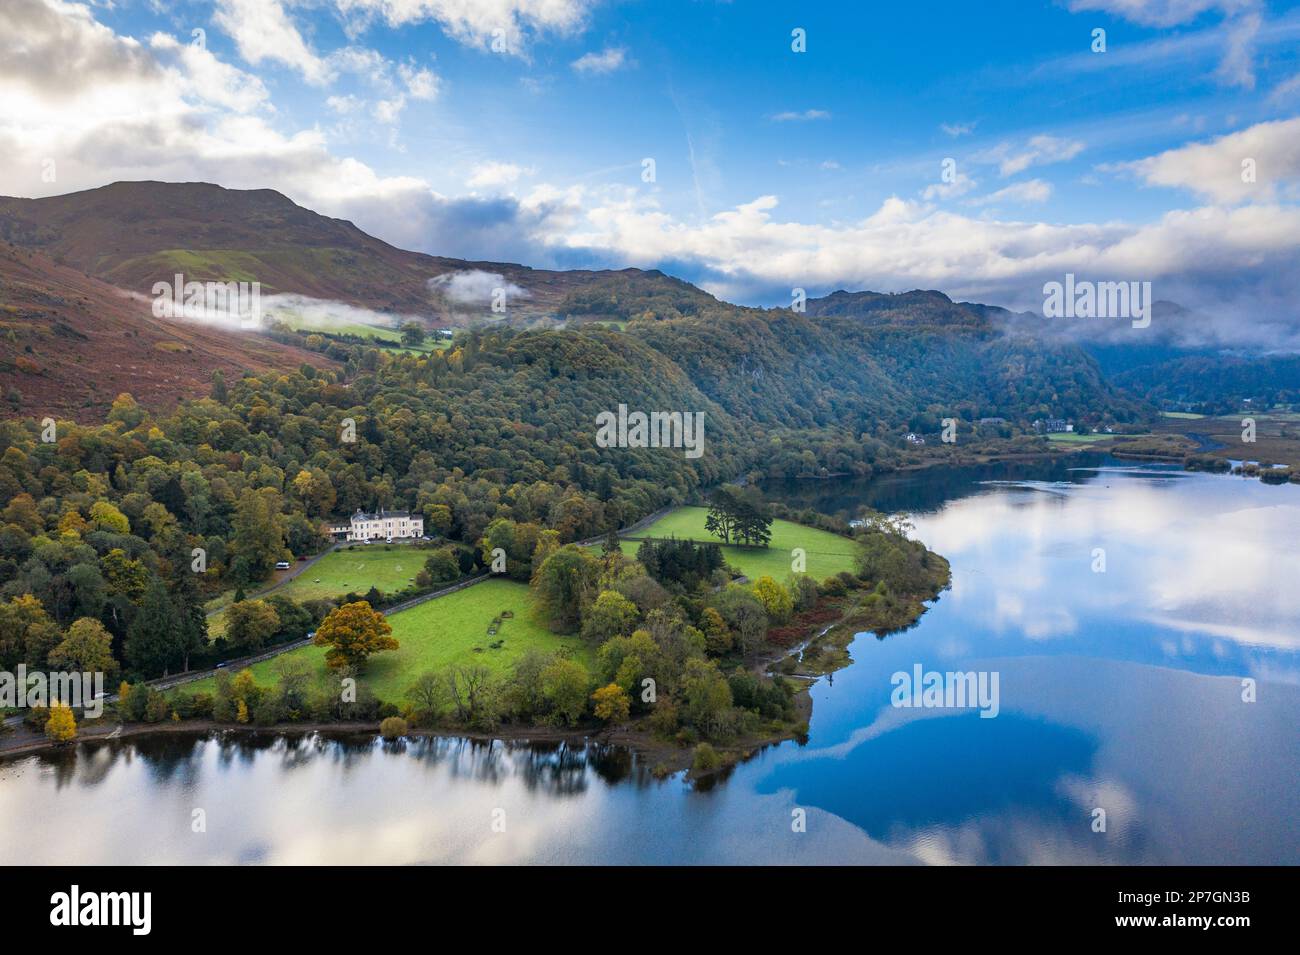 Angleterre, Cumbria, parc national de Lake District. Vue aérienne de Derwentwater, un lac populaire près de Keswick, à l'aube. Banque D'Images